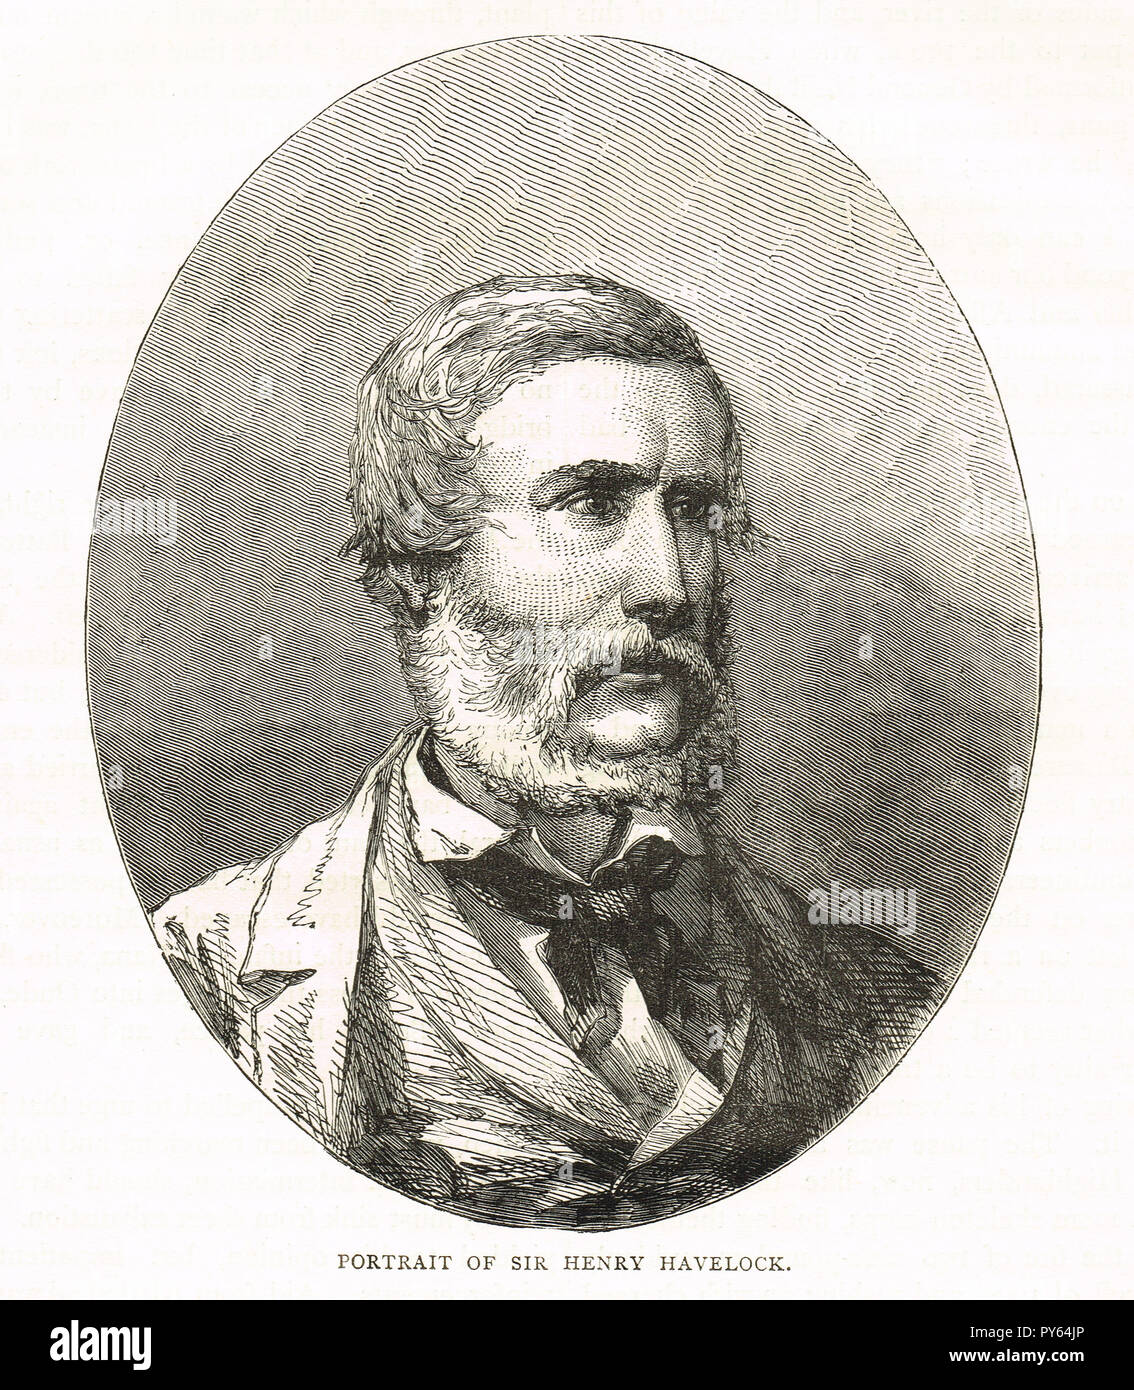 El Mayor General Sir Henry Havelock. El general británico, particularmente aquellos relacionados con la India, recapturado Cawnpore durante la rebelión india de 1857 Foto de stock